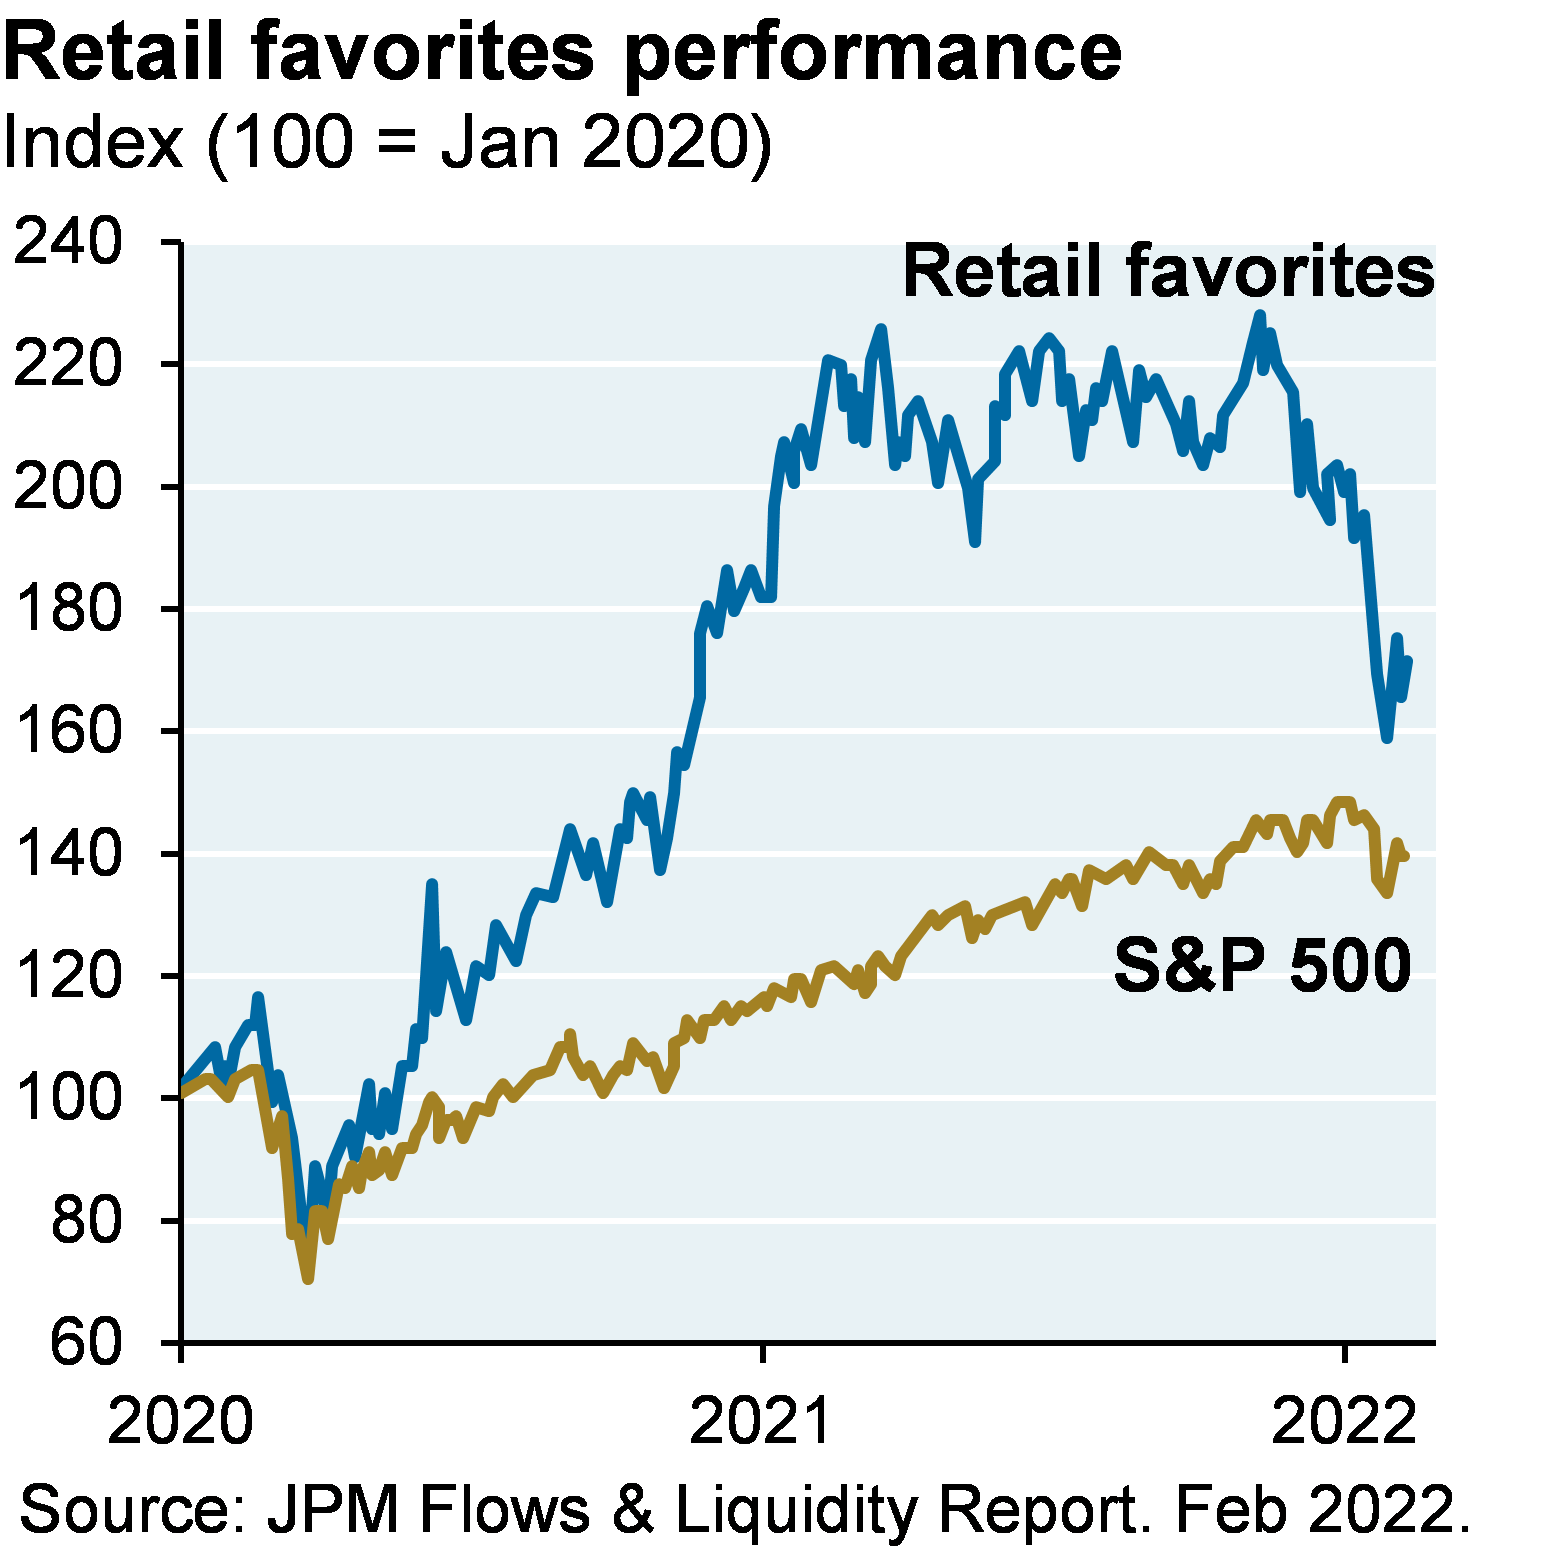 Retail favorites performance